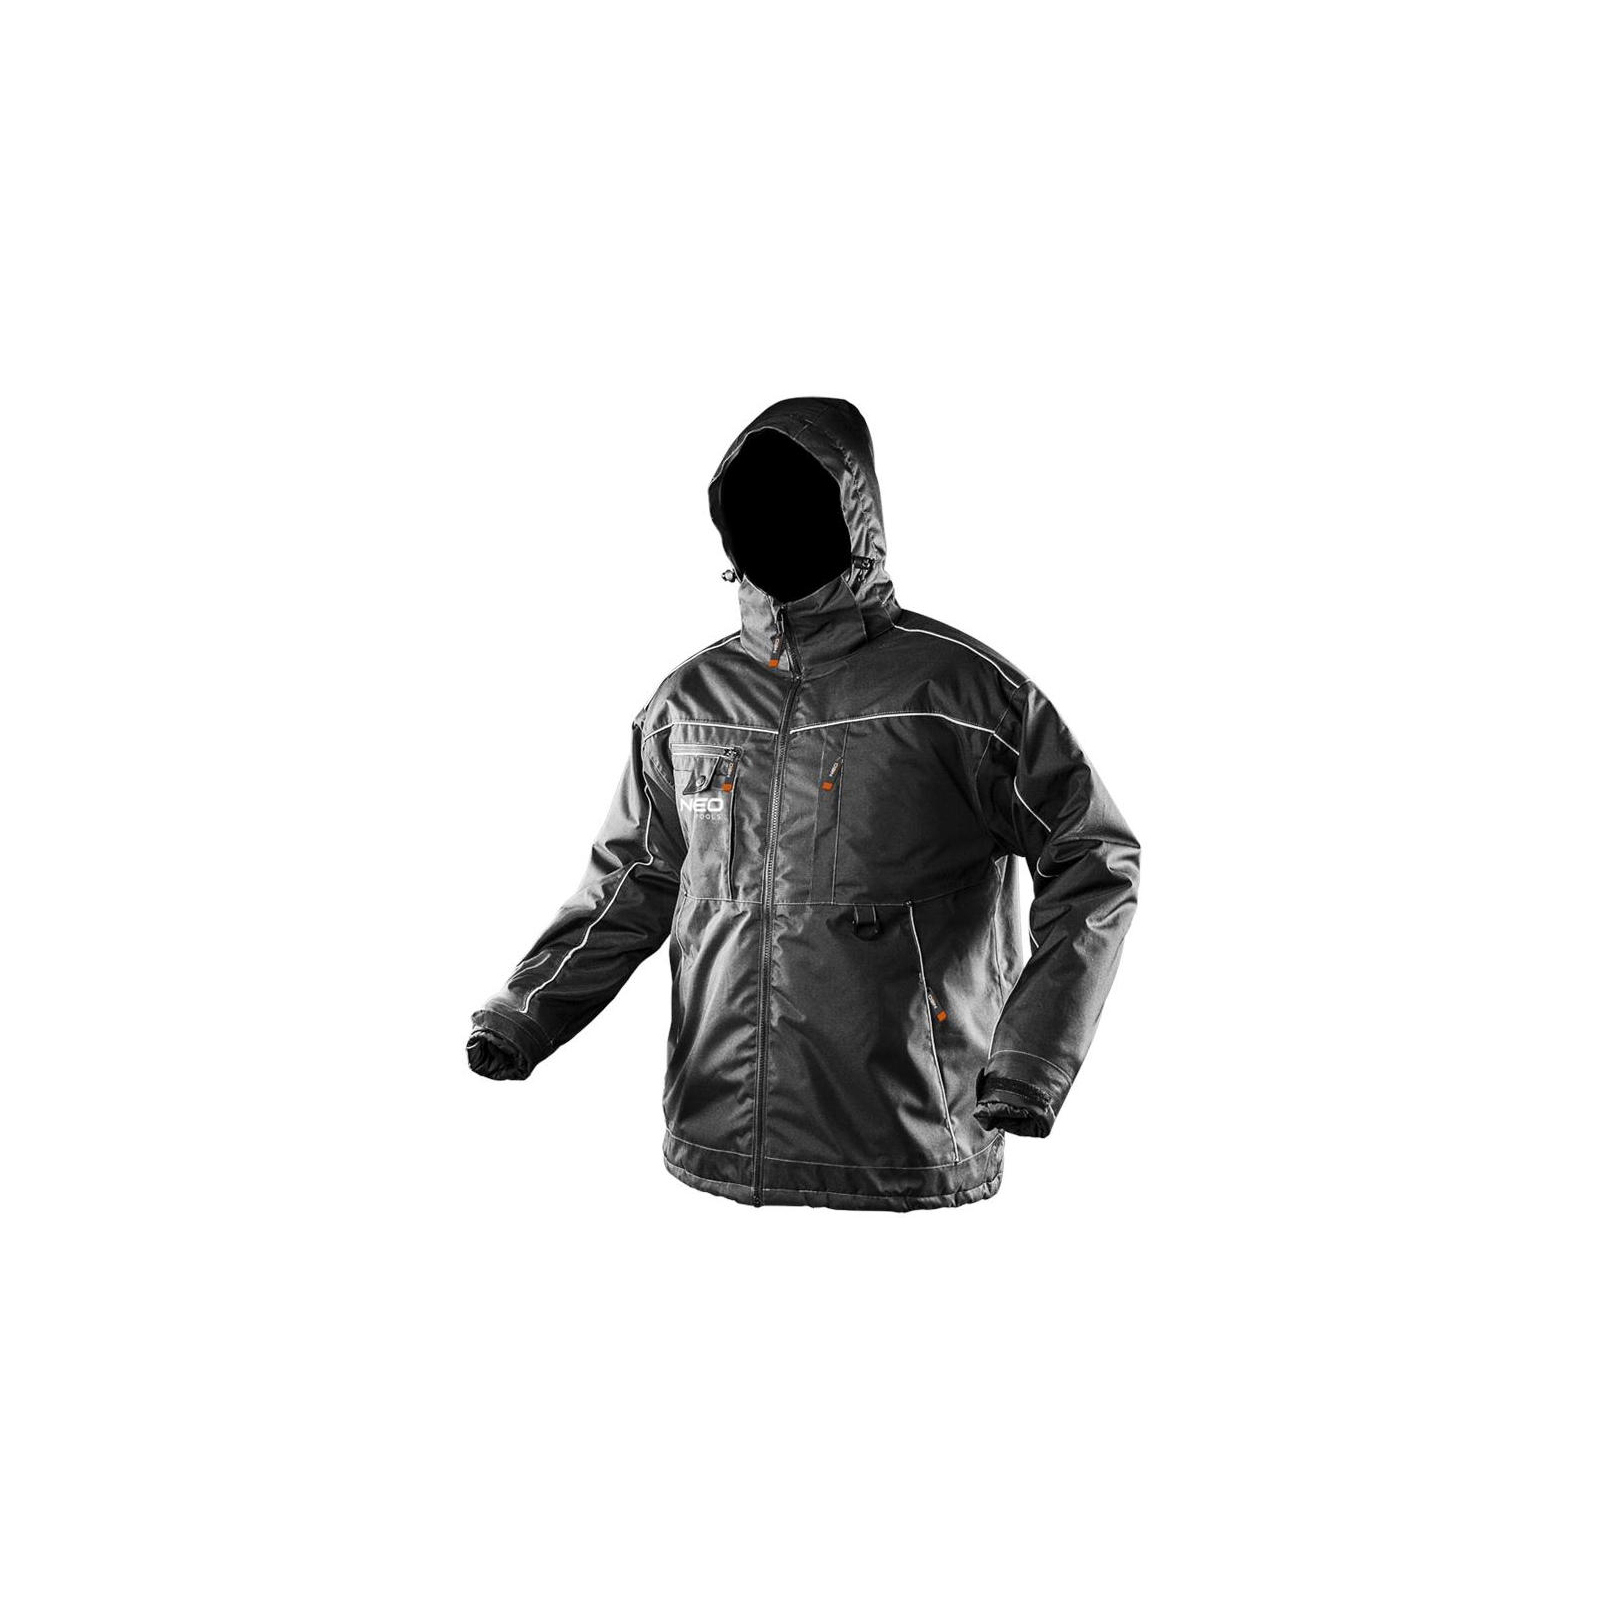 Куртка рабочая Neo Tools Oxford, размер L/52, водостойкая, светоотраж.елем, утепленна (81-570-L)